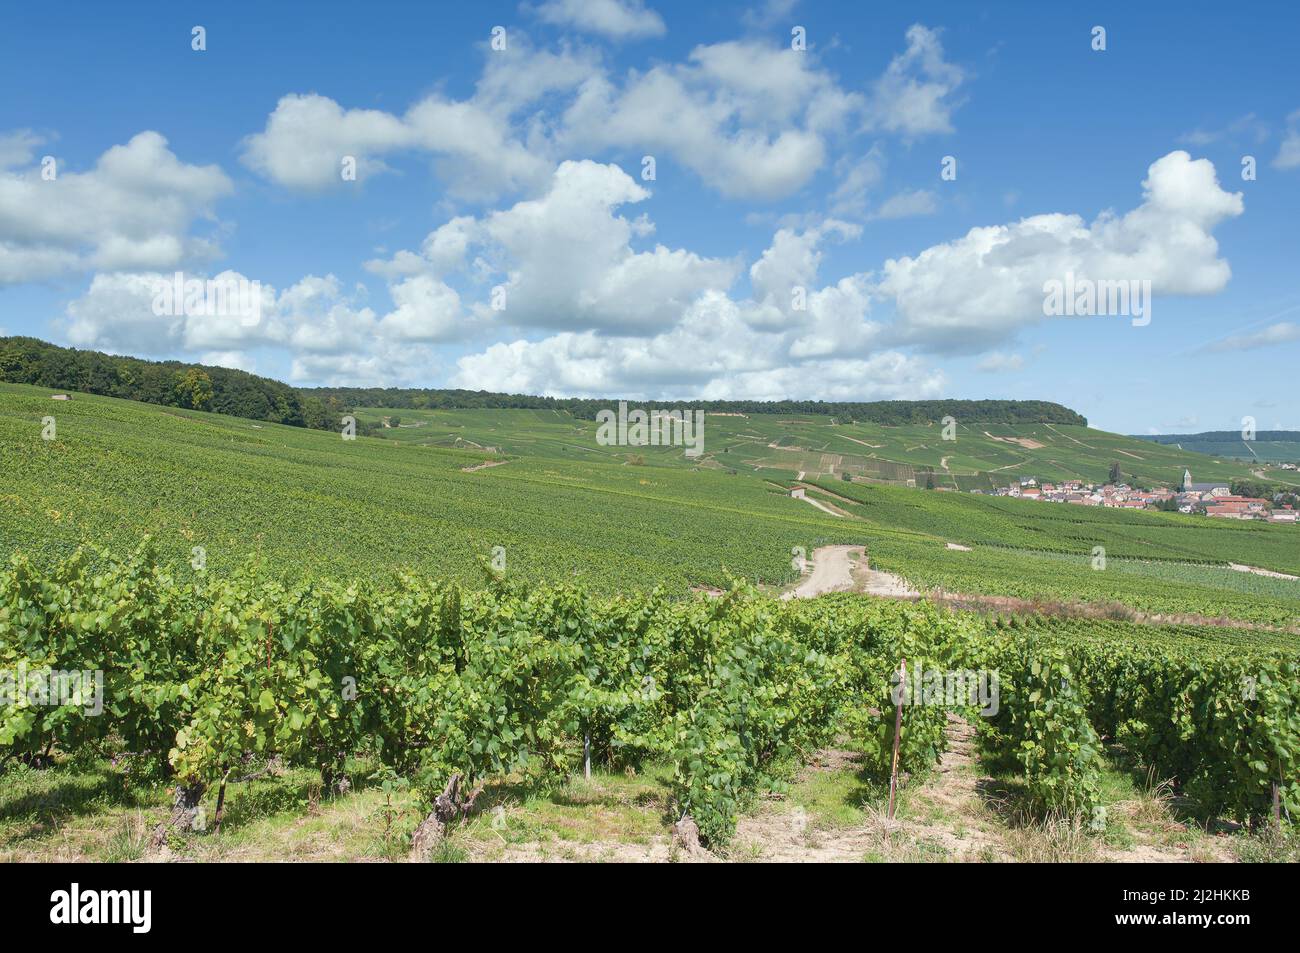 Villaggio del vino di Oger vicino Epernay, regione Champagne, Francia Foto Stock